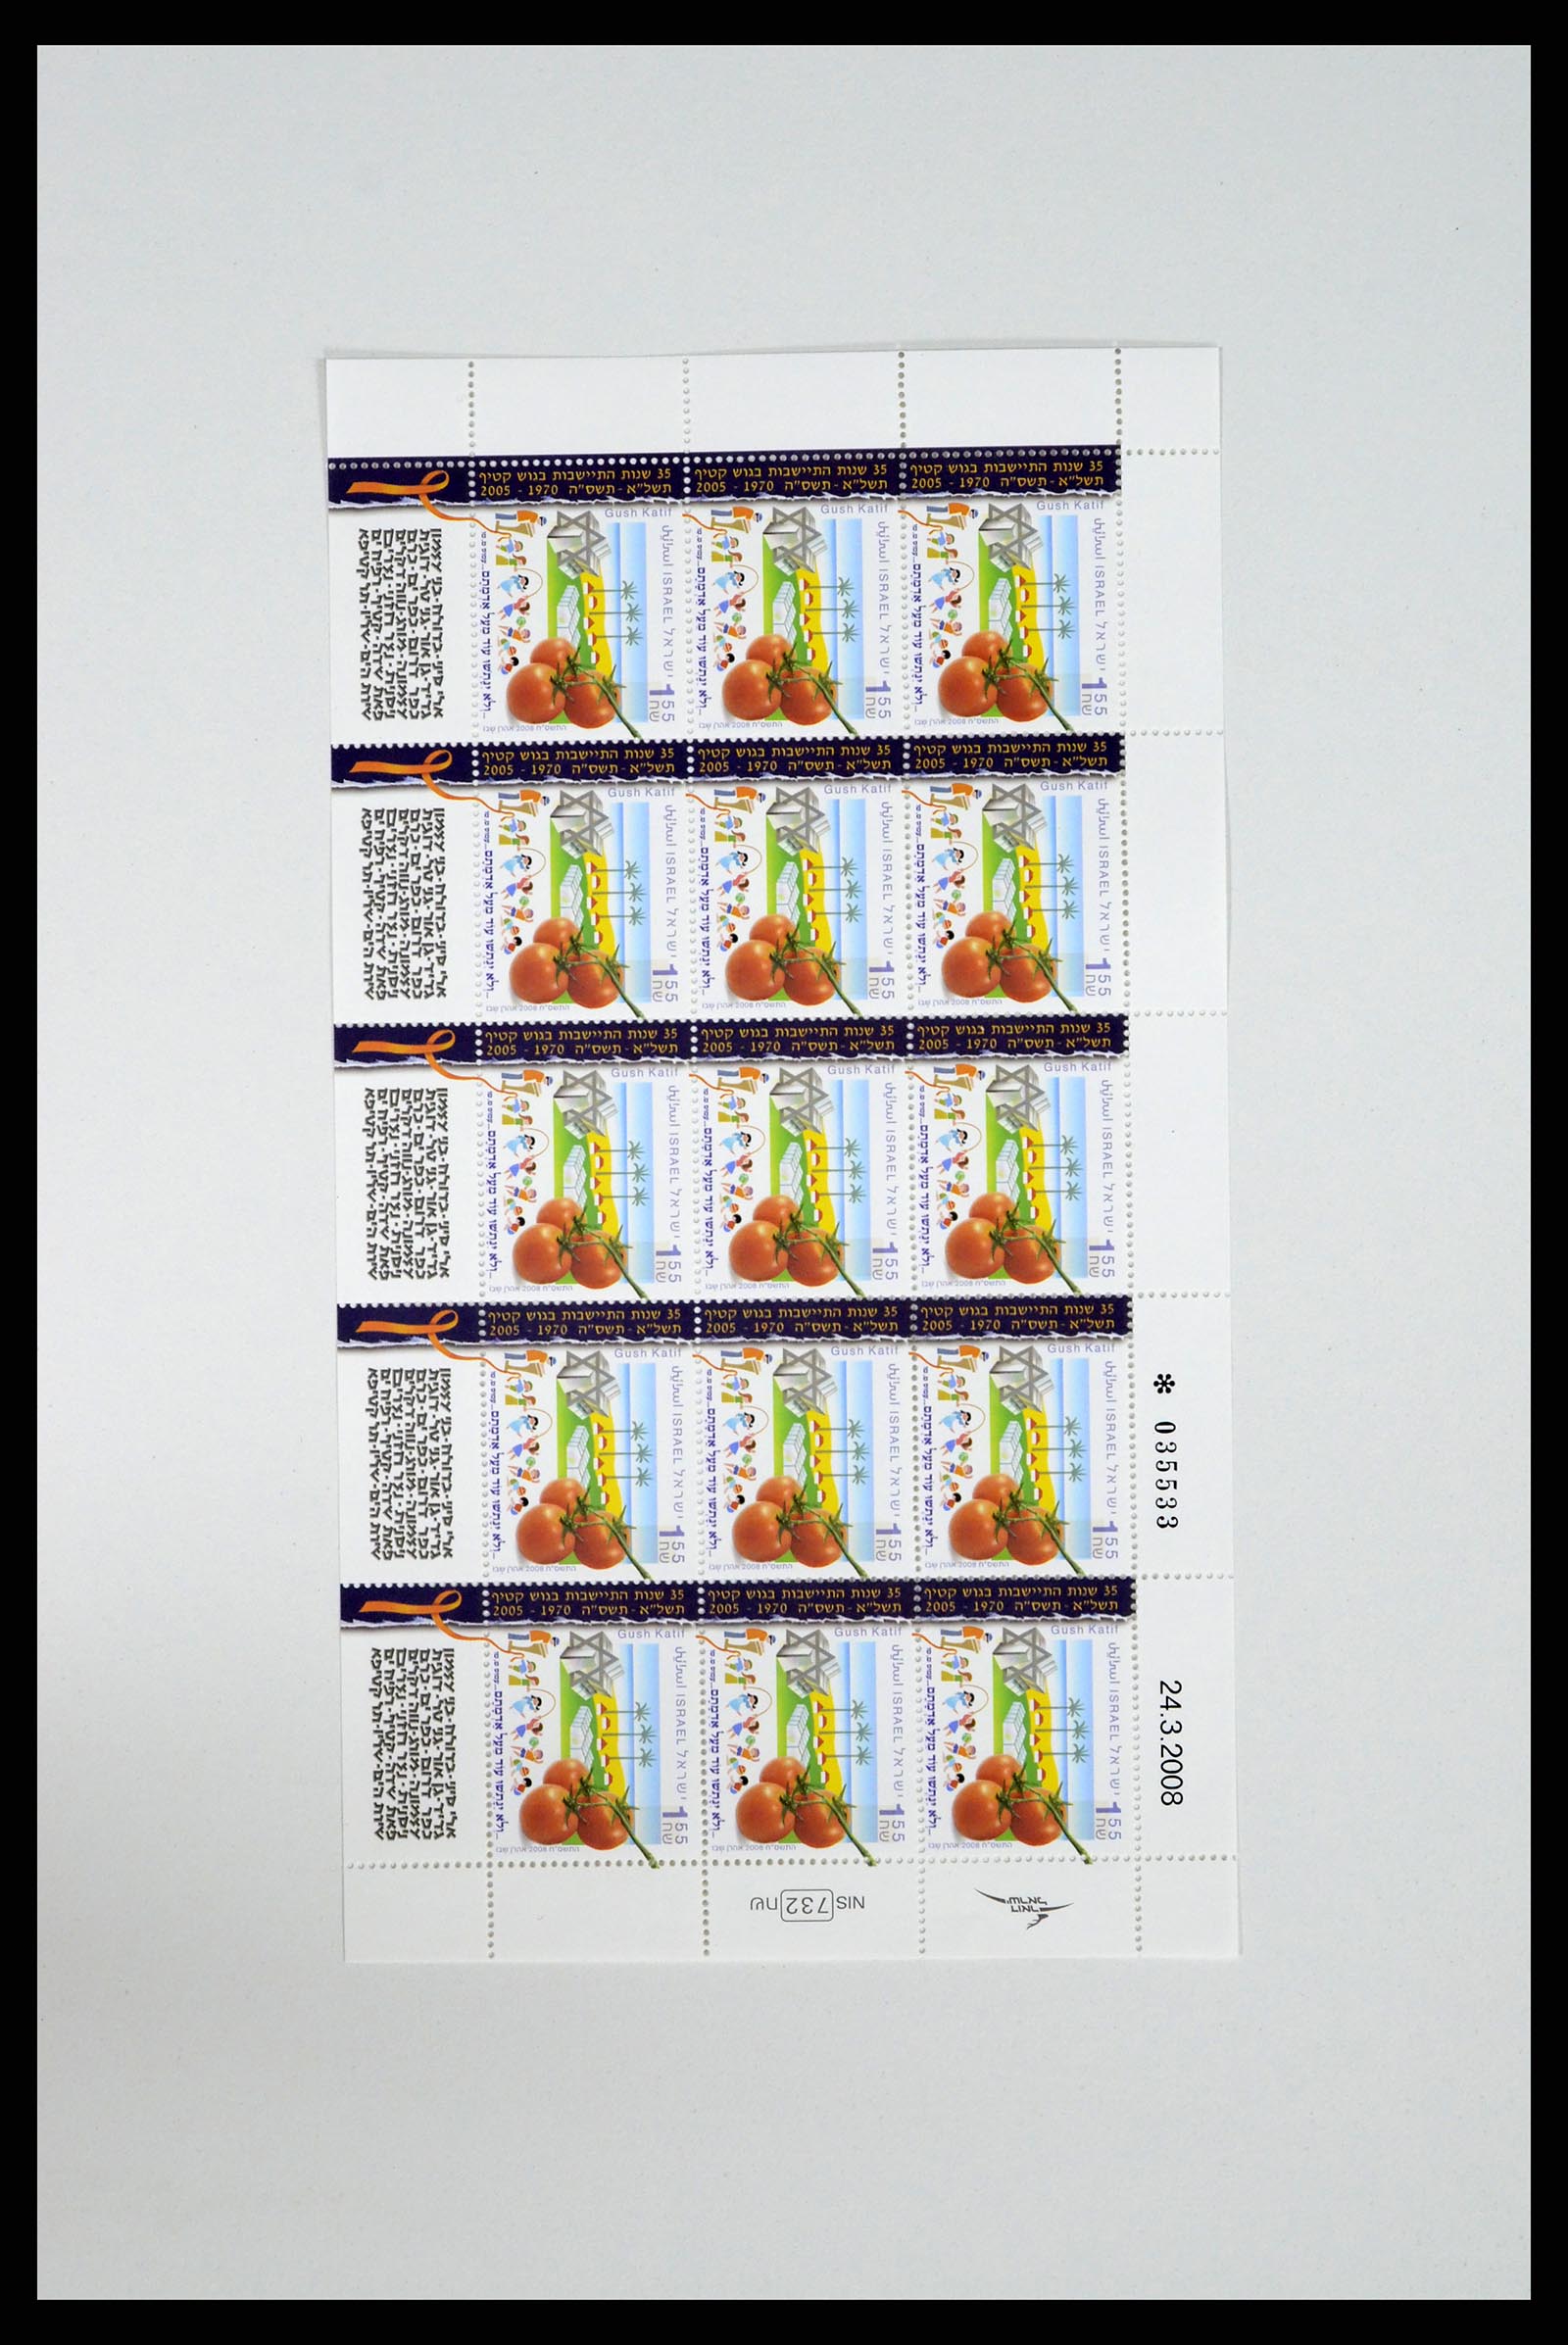 37779 059 - Postzegelverzameling 37779 Israël velletjes 1986-2009.